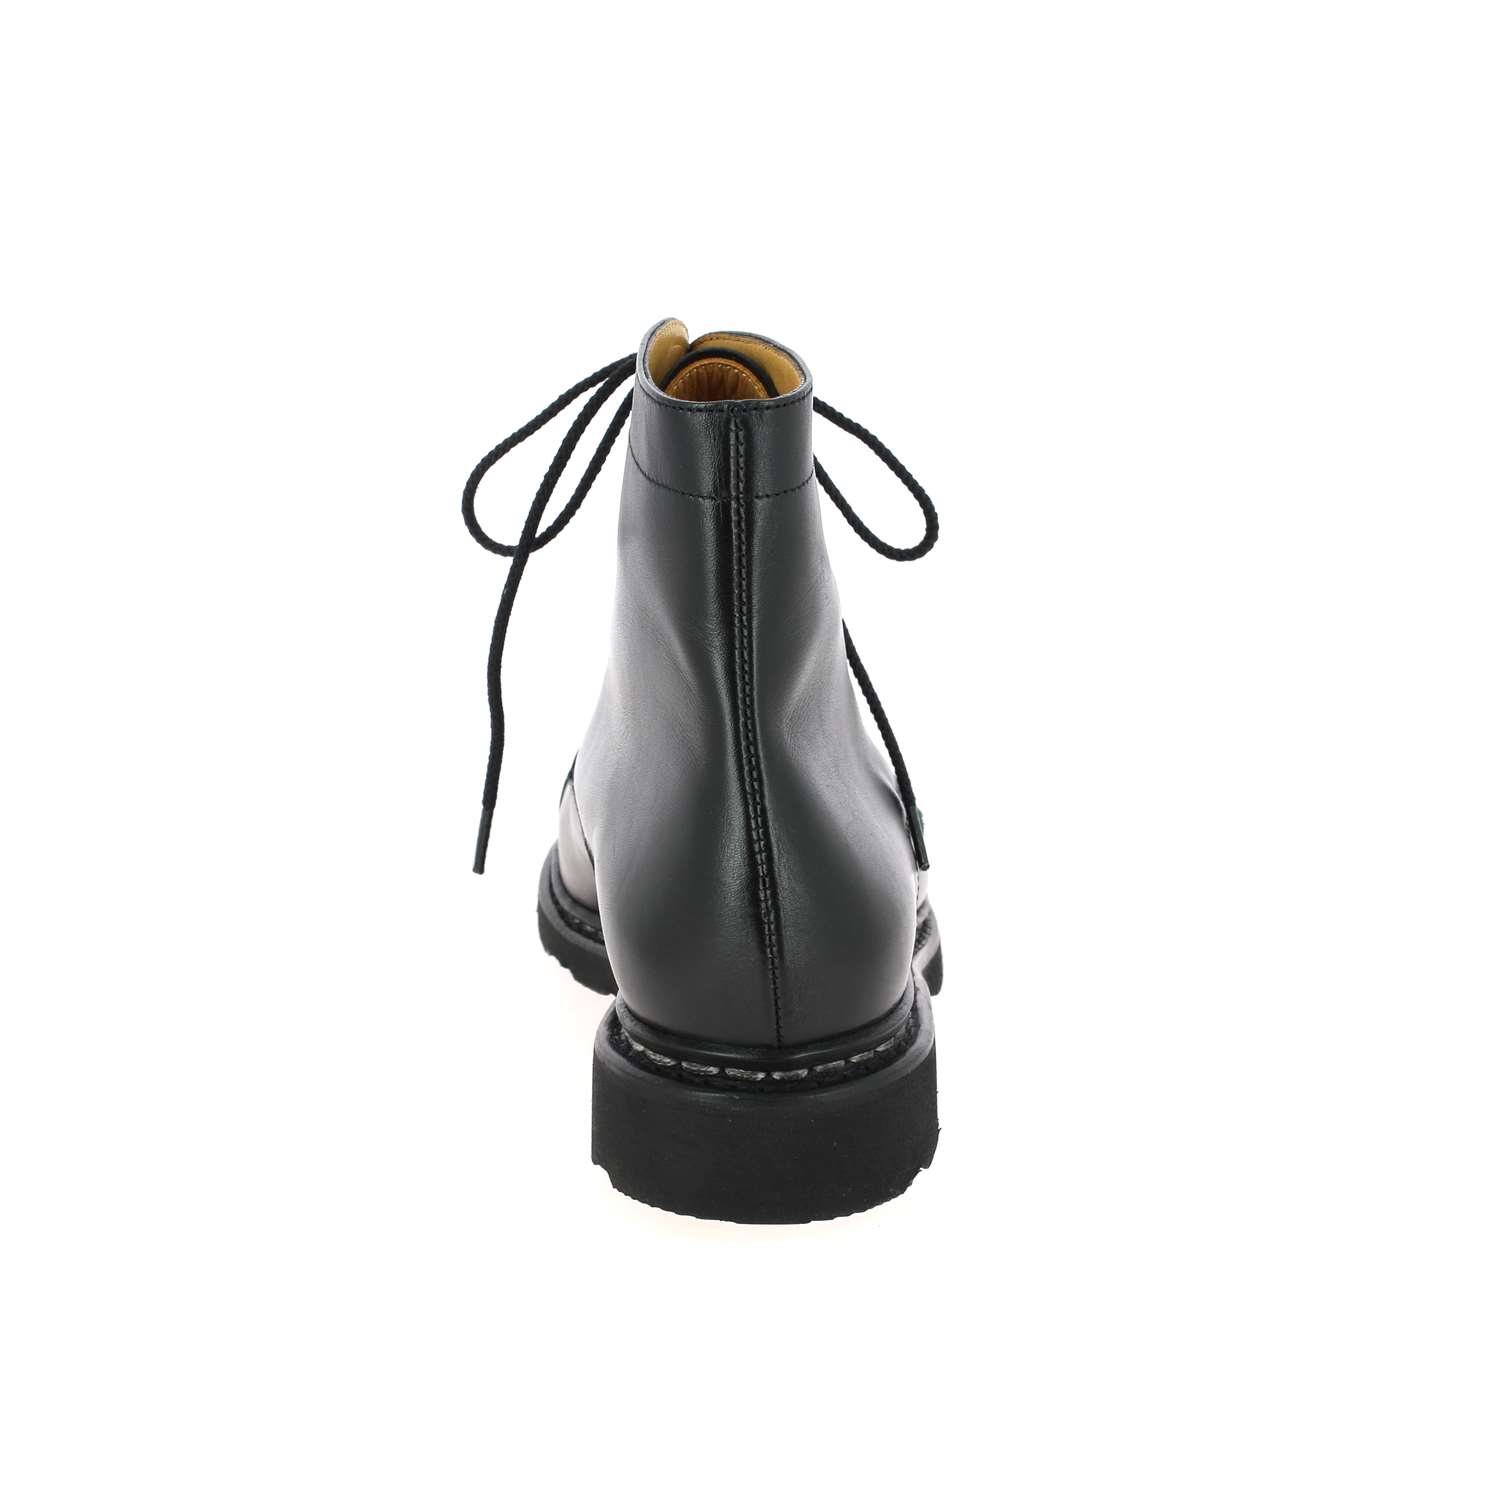 04 - CLAMART - PARABOOT - Boots et bottines - Cuir